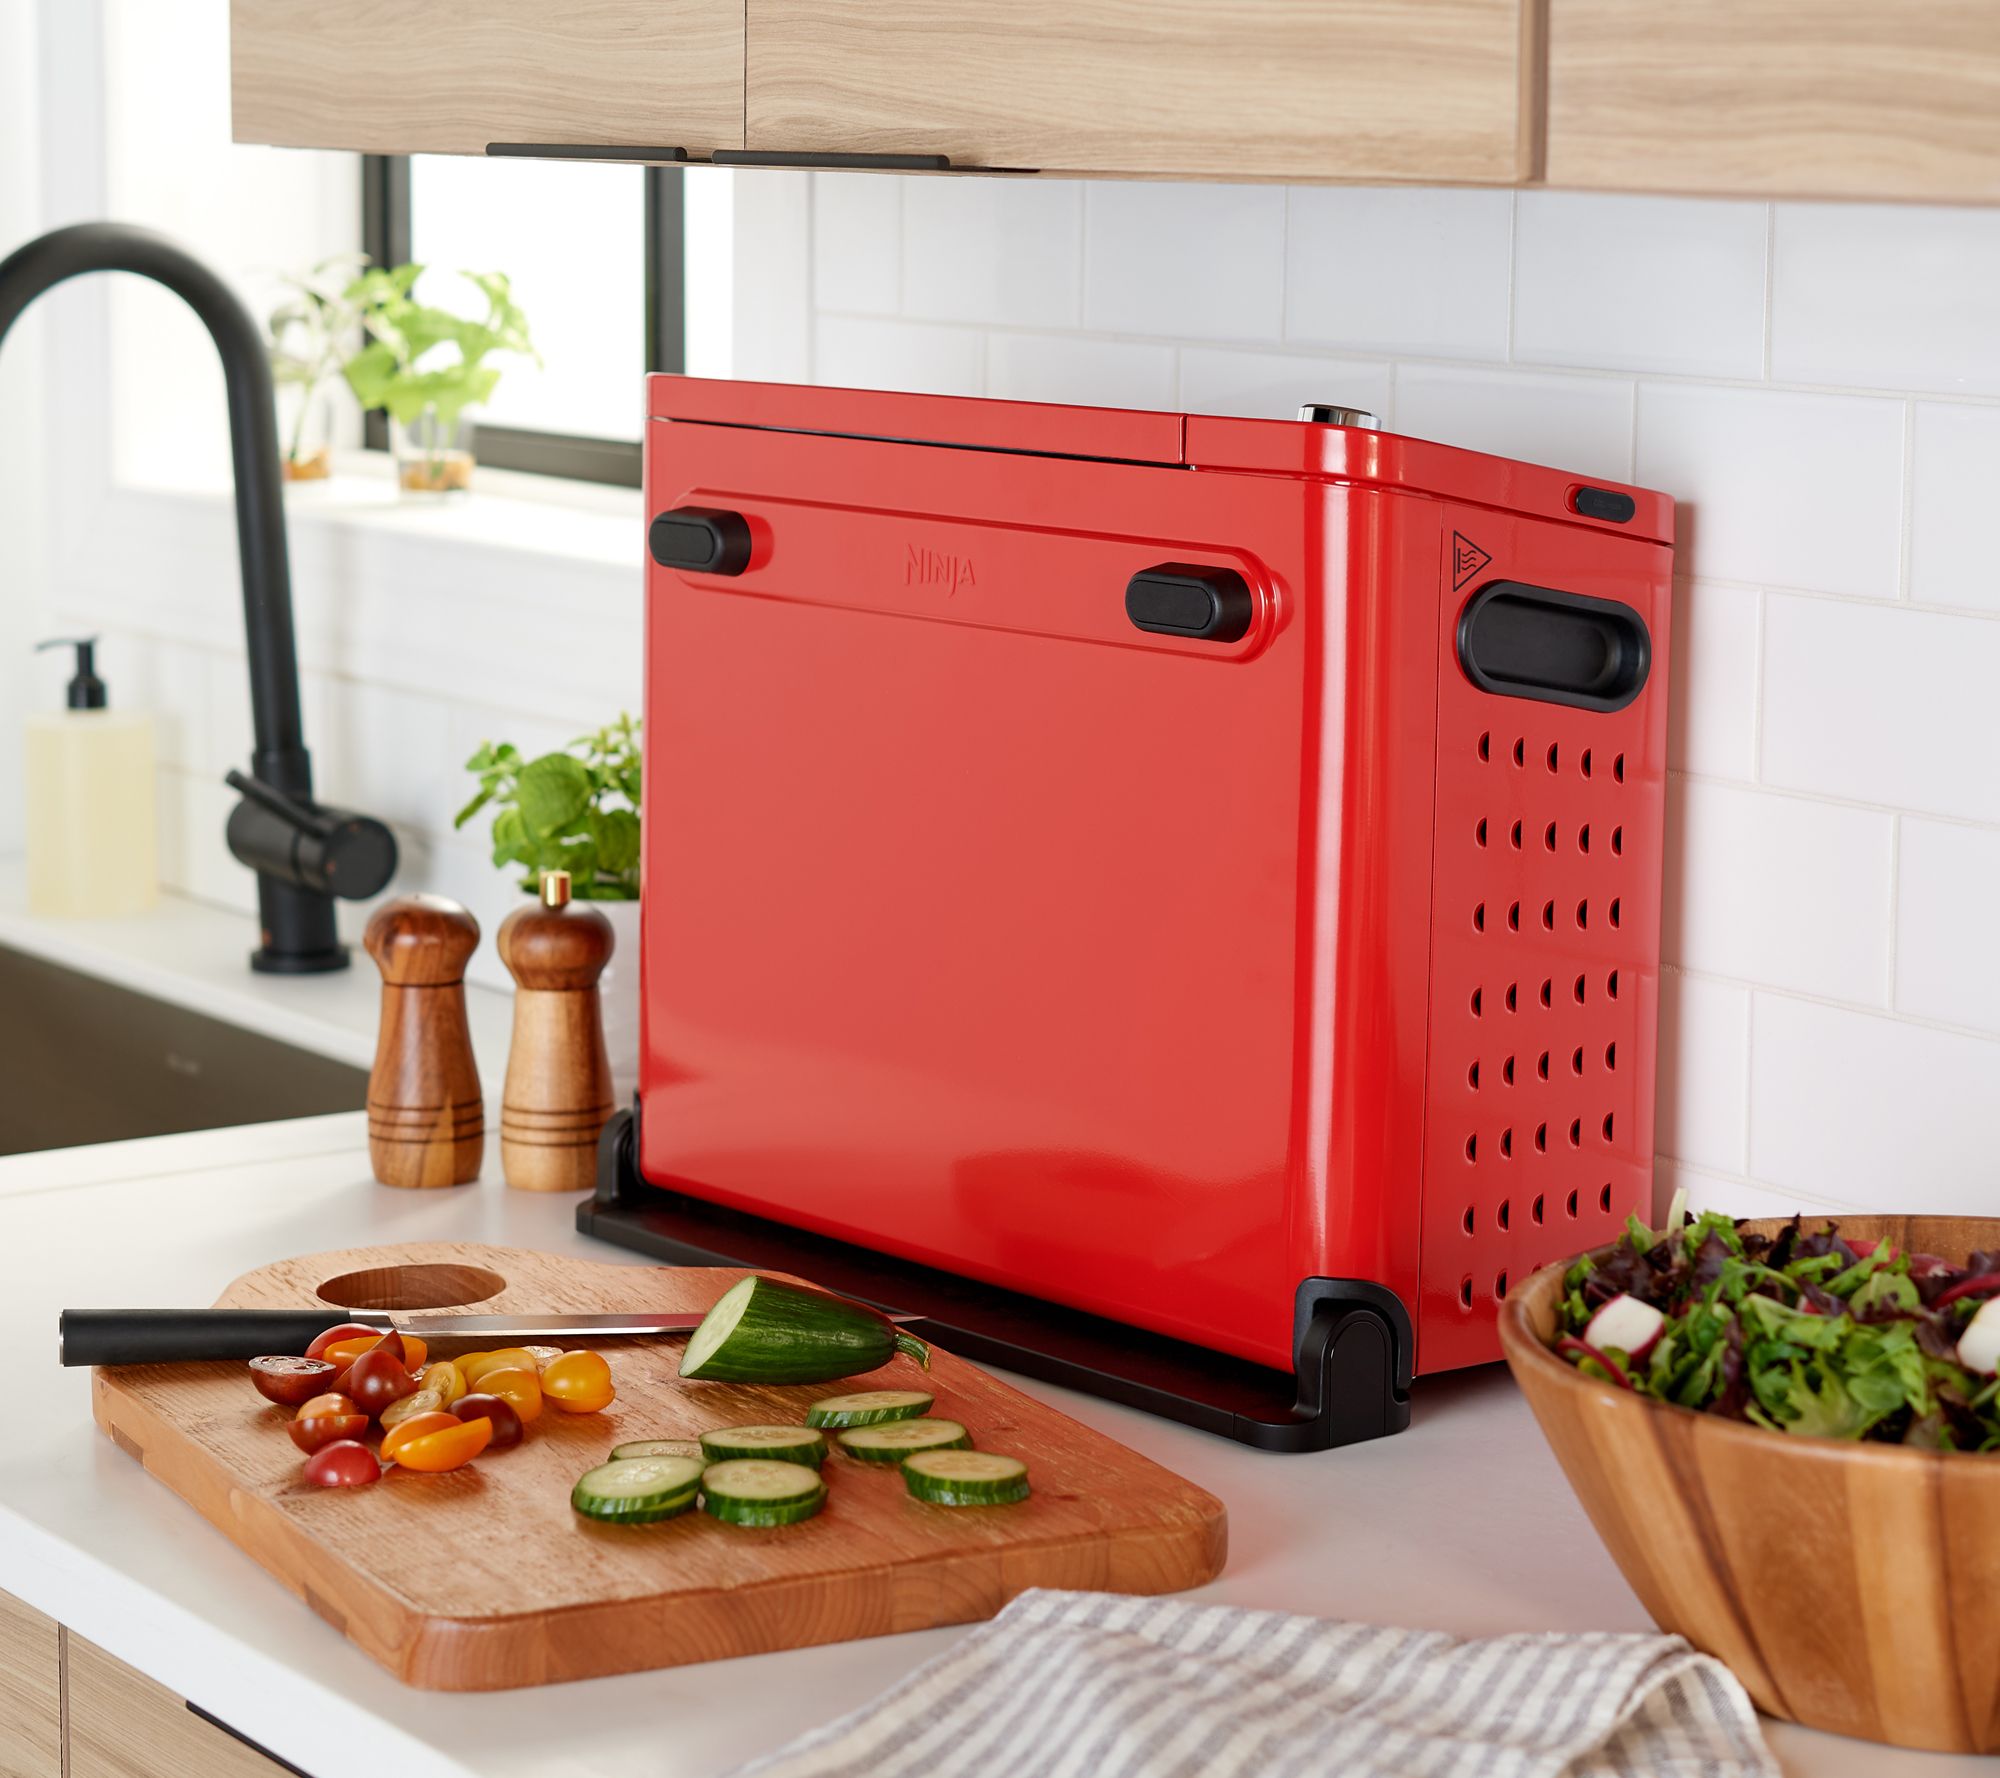 Ninja Foodi 15-in-1 SMART Dual Heat Air Fry Flip oven 1800 Stainless Works